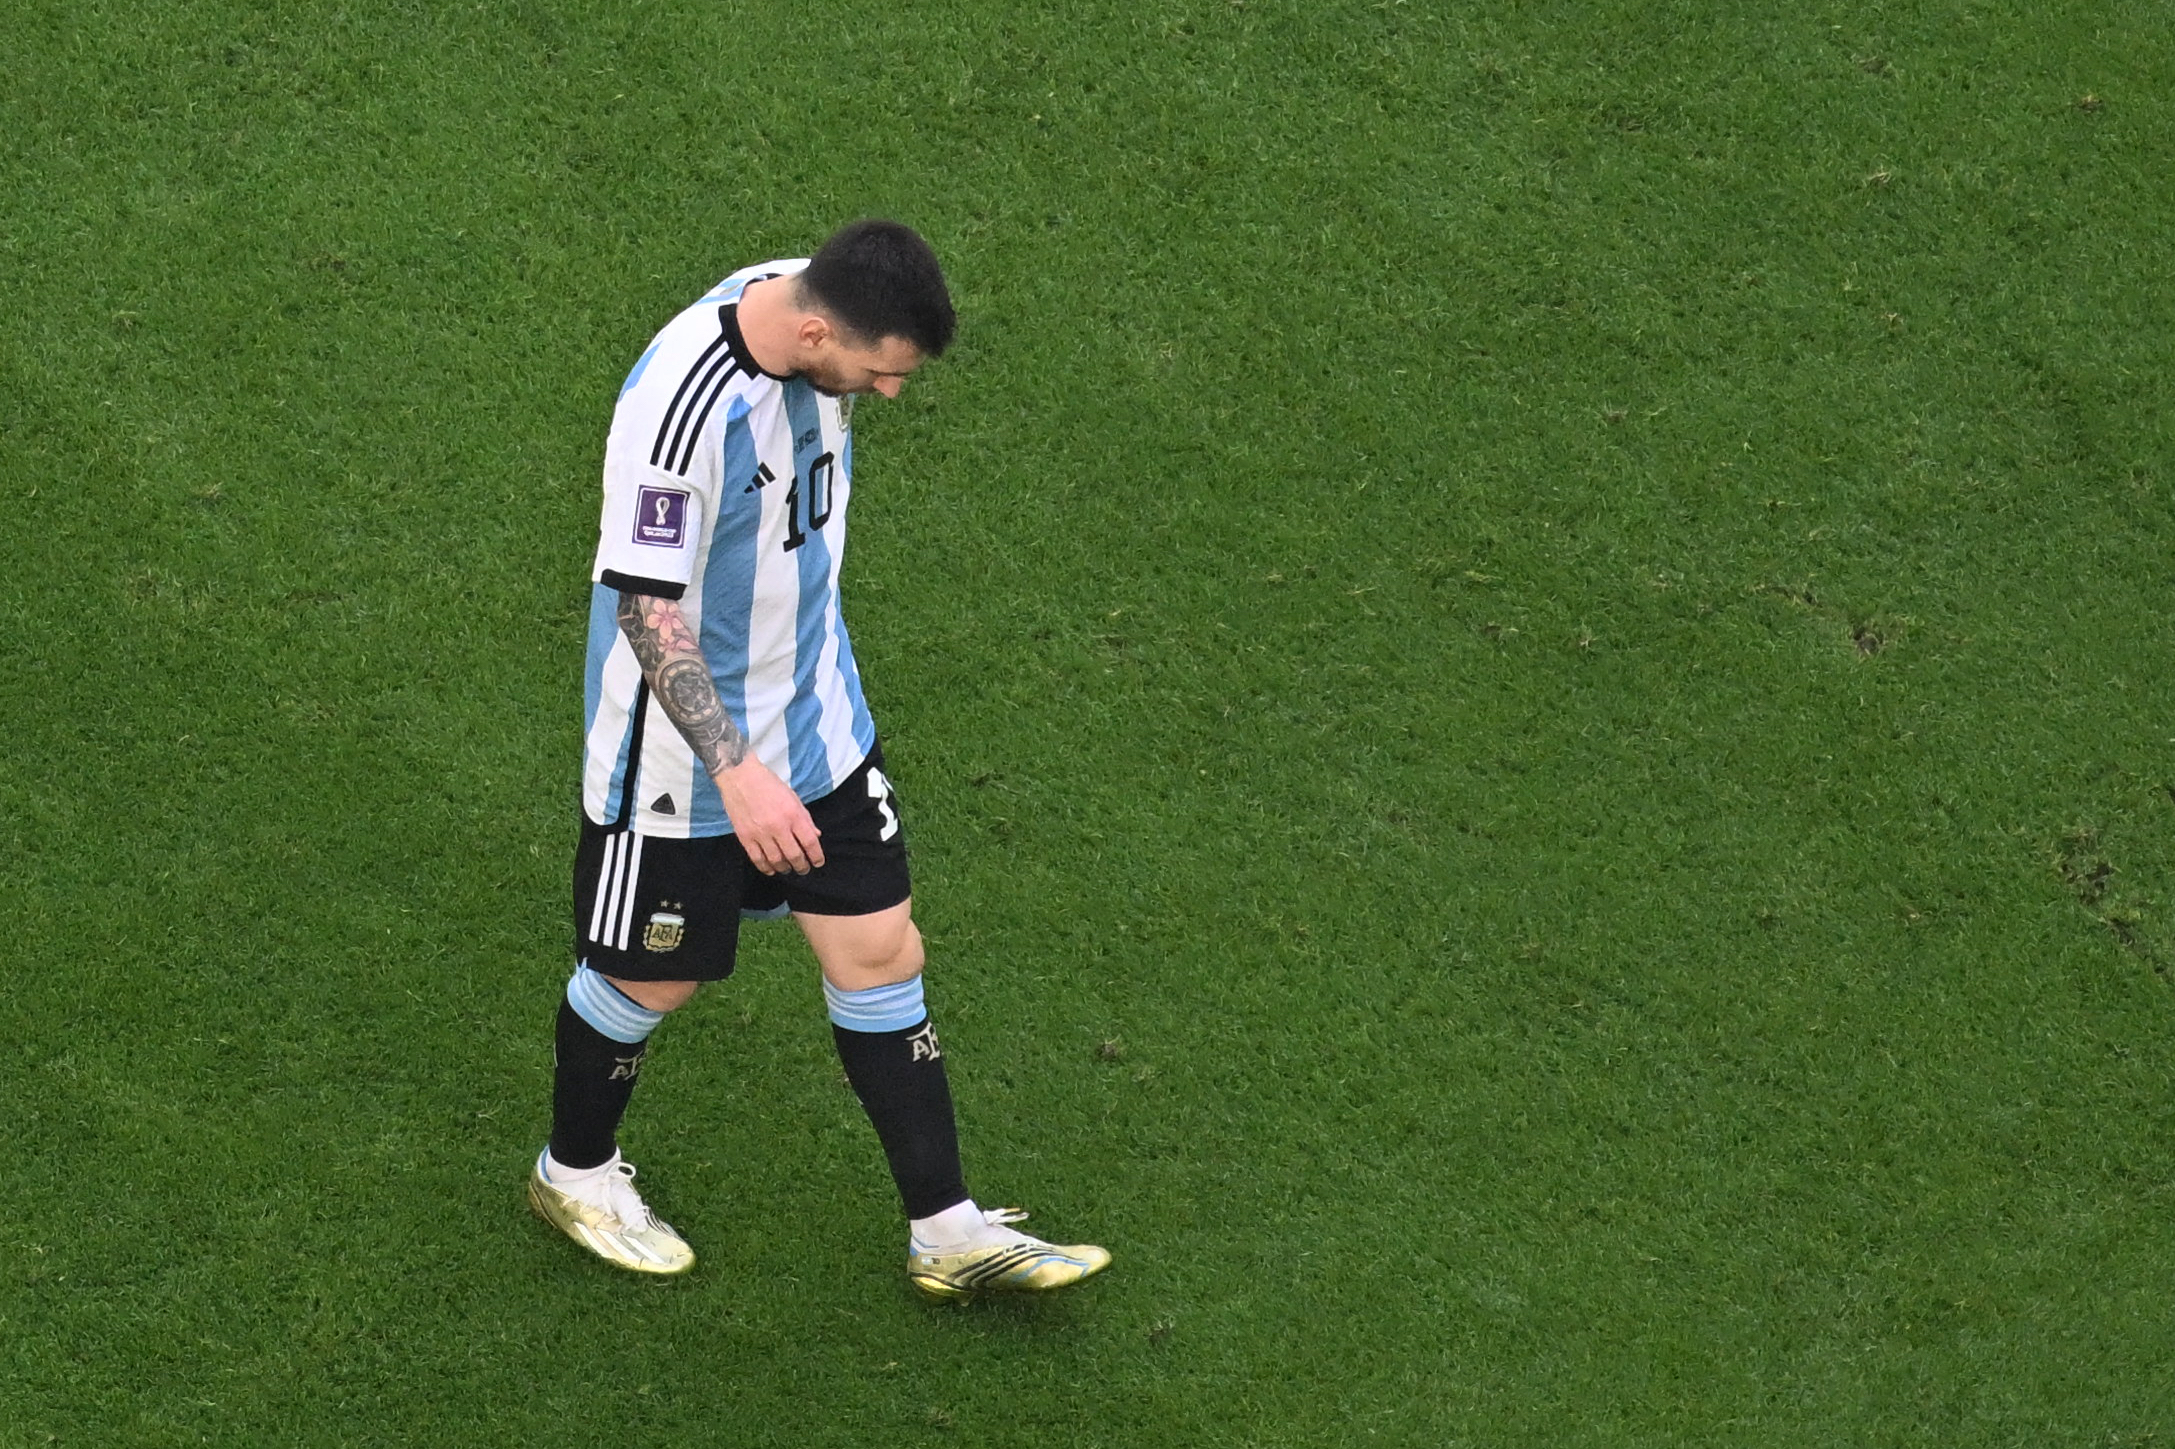 Messi - Siêu sao bóng đá Argentina là tượng đài của bóng đá thế giới với khả năng điêu luyện trên sân cỏ và sự nỗ lực không ngừng nghỉ. Hãy cùng chiêm ngưỡng hình ảnh về Messi để tận hưởng khoảnh khắc đẹp nhất của thể thao.